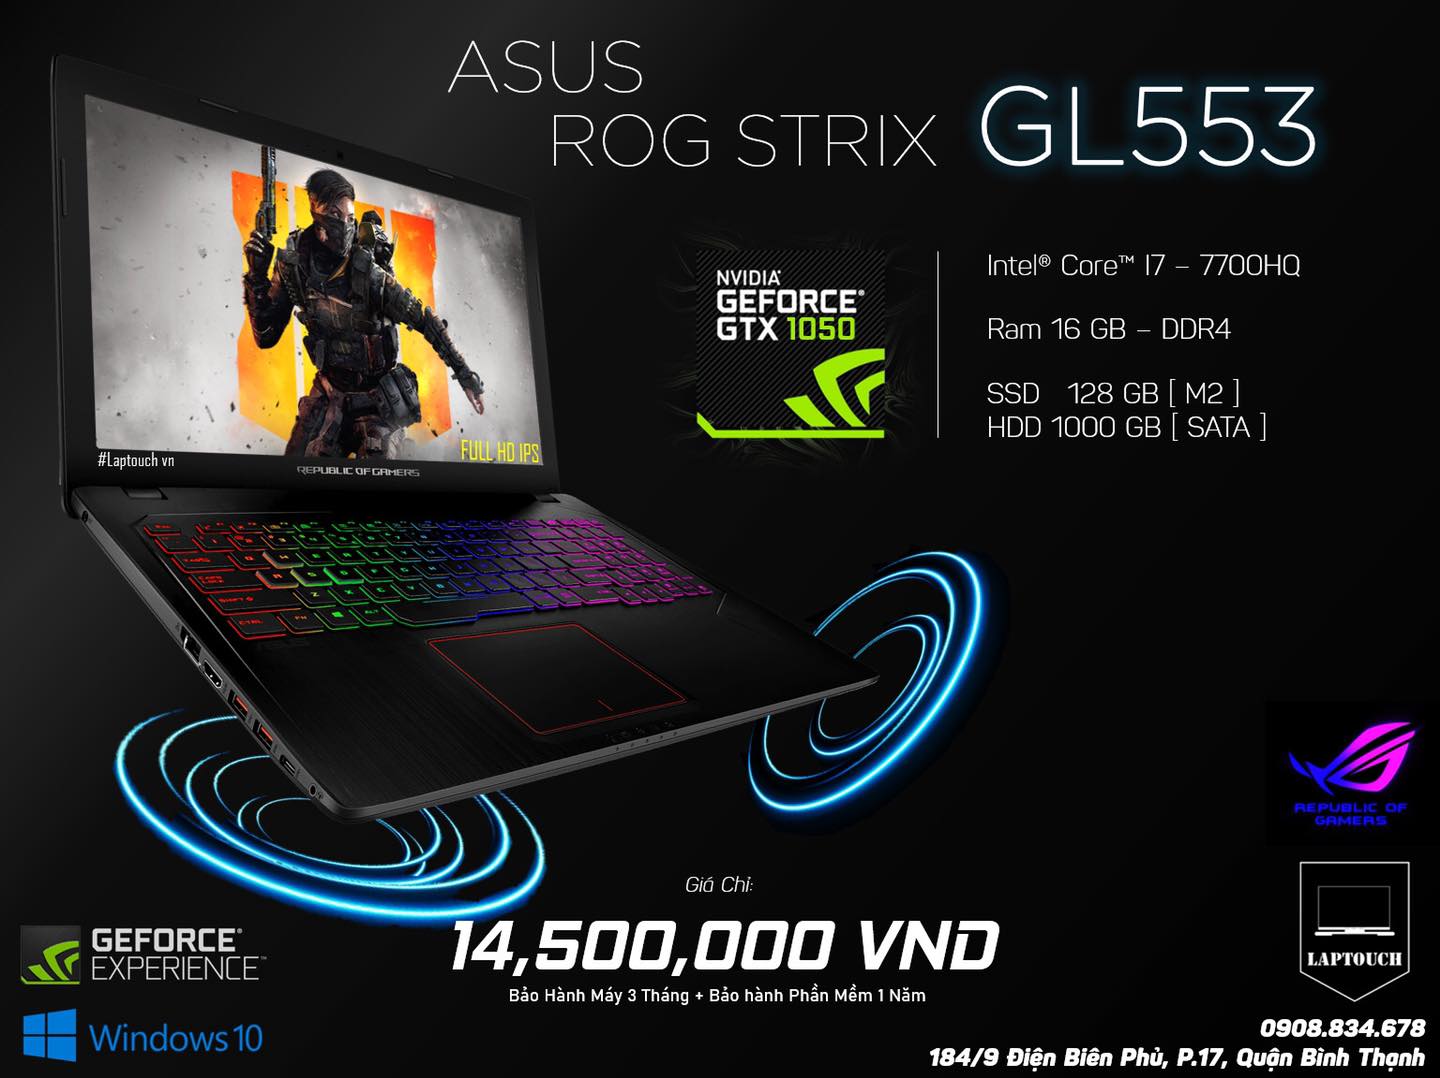 Asus ROG STRIX GL553